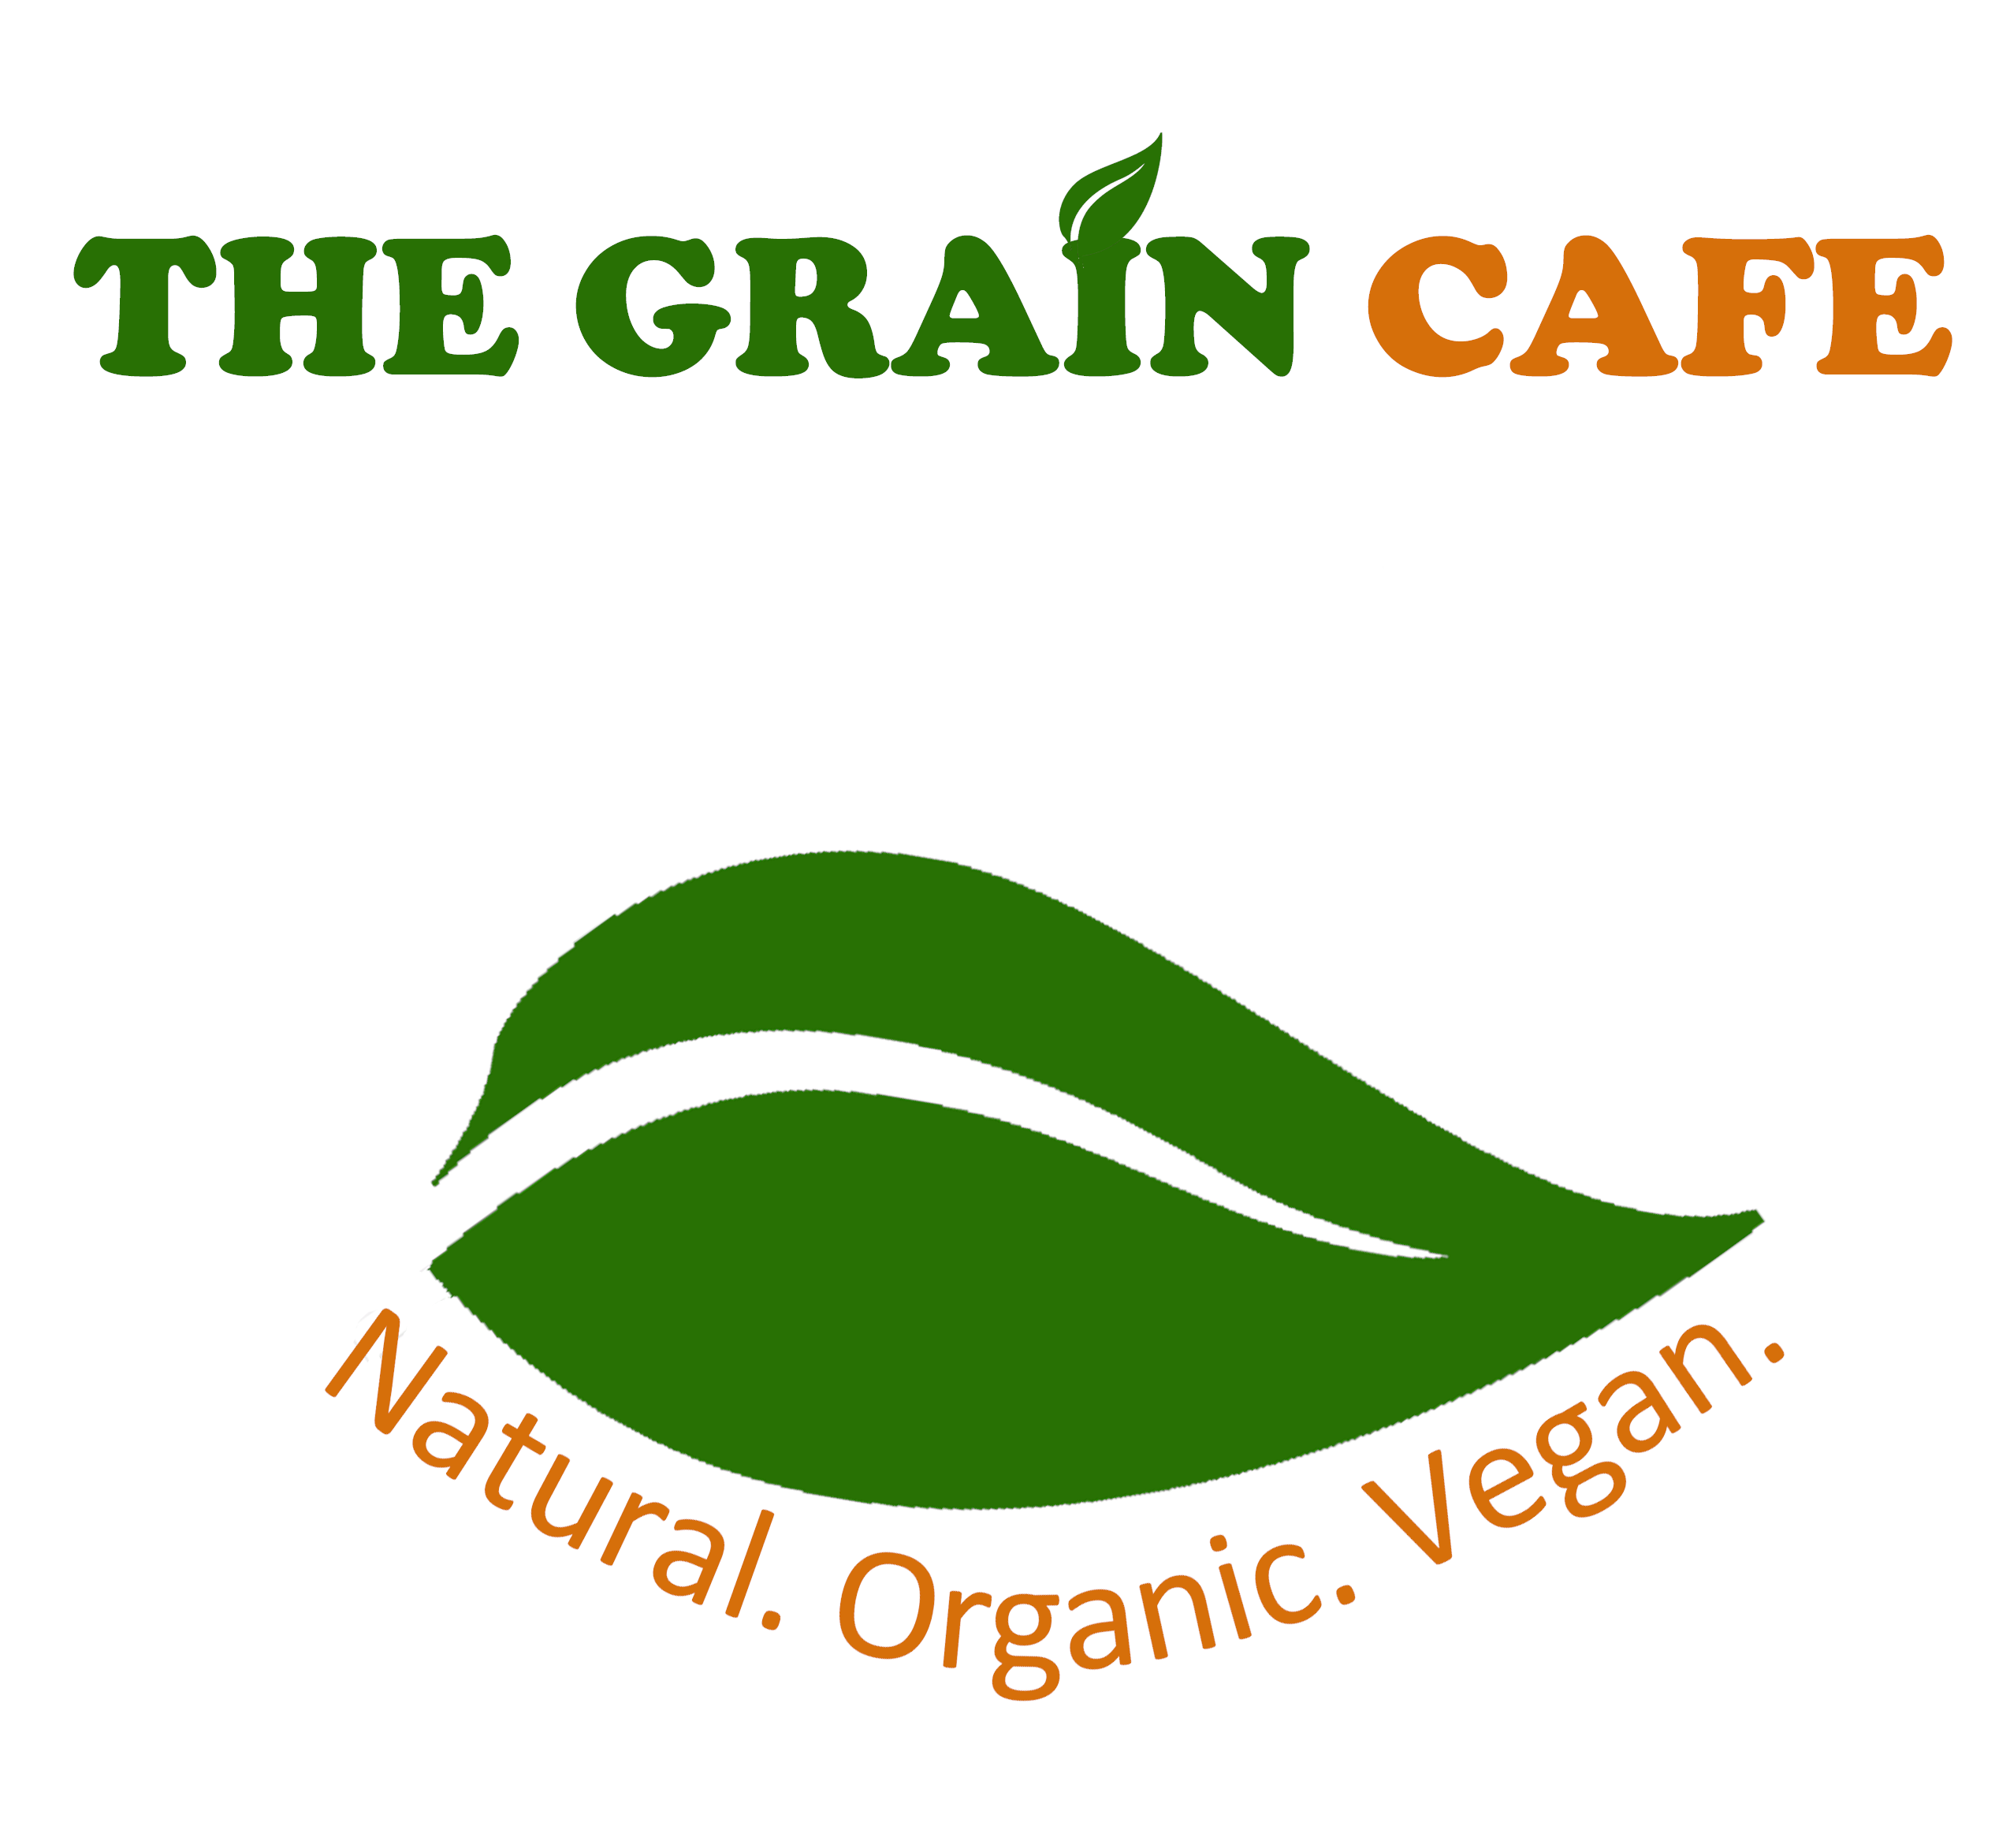 The Grain Cafe - Serving Natural, Organic, Vegan Food.